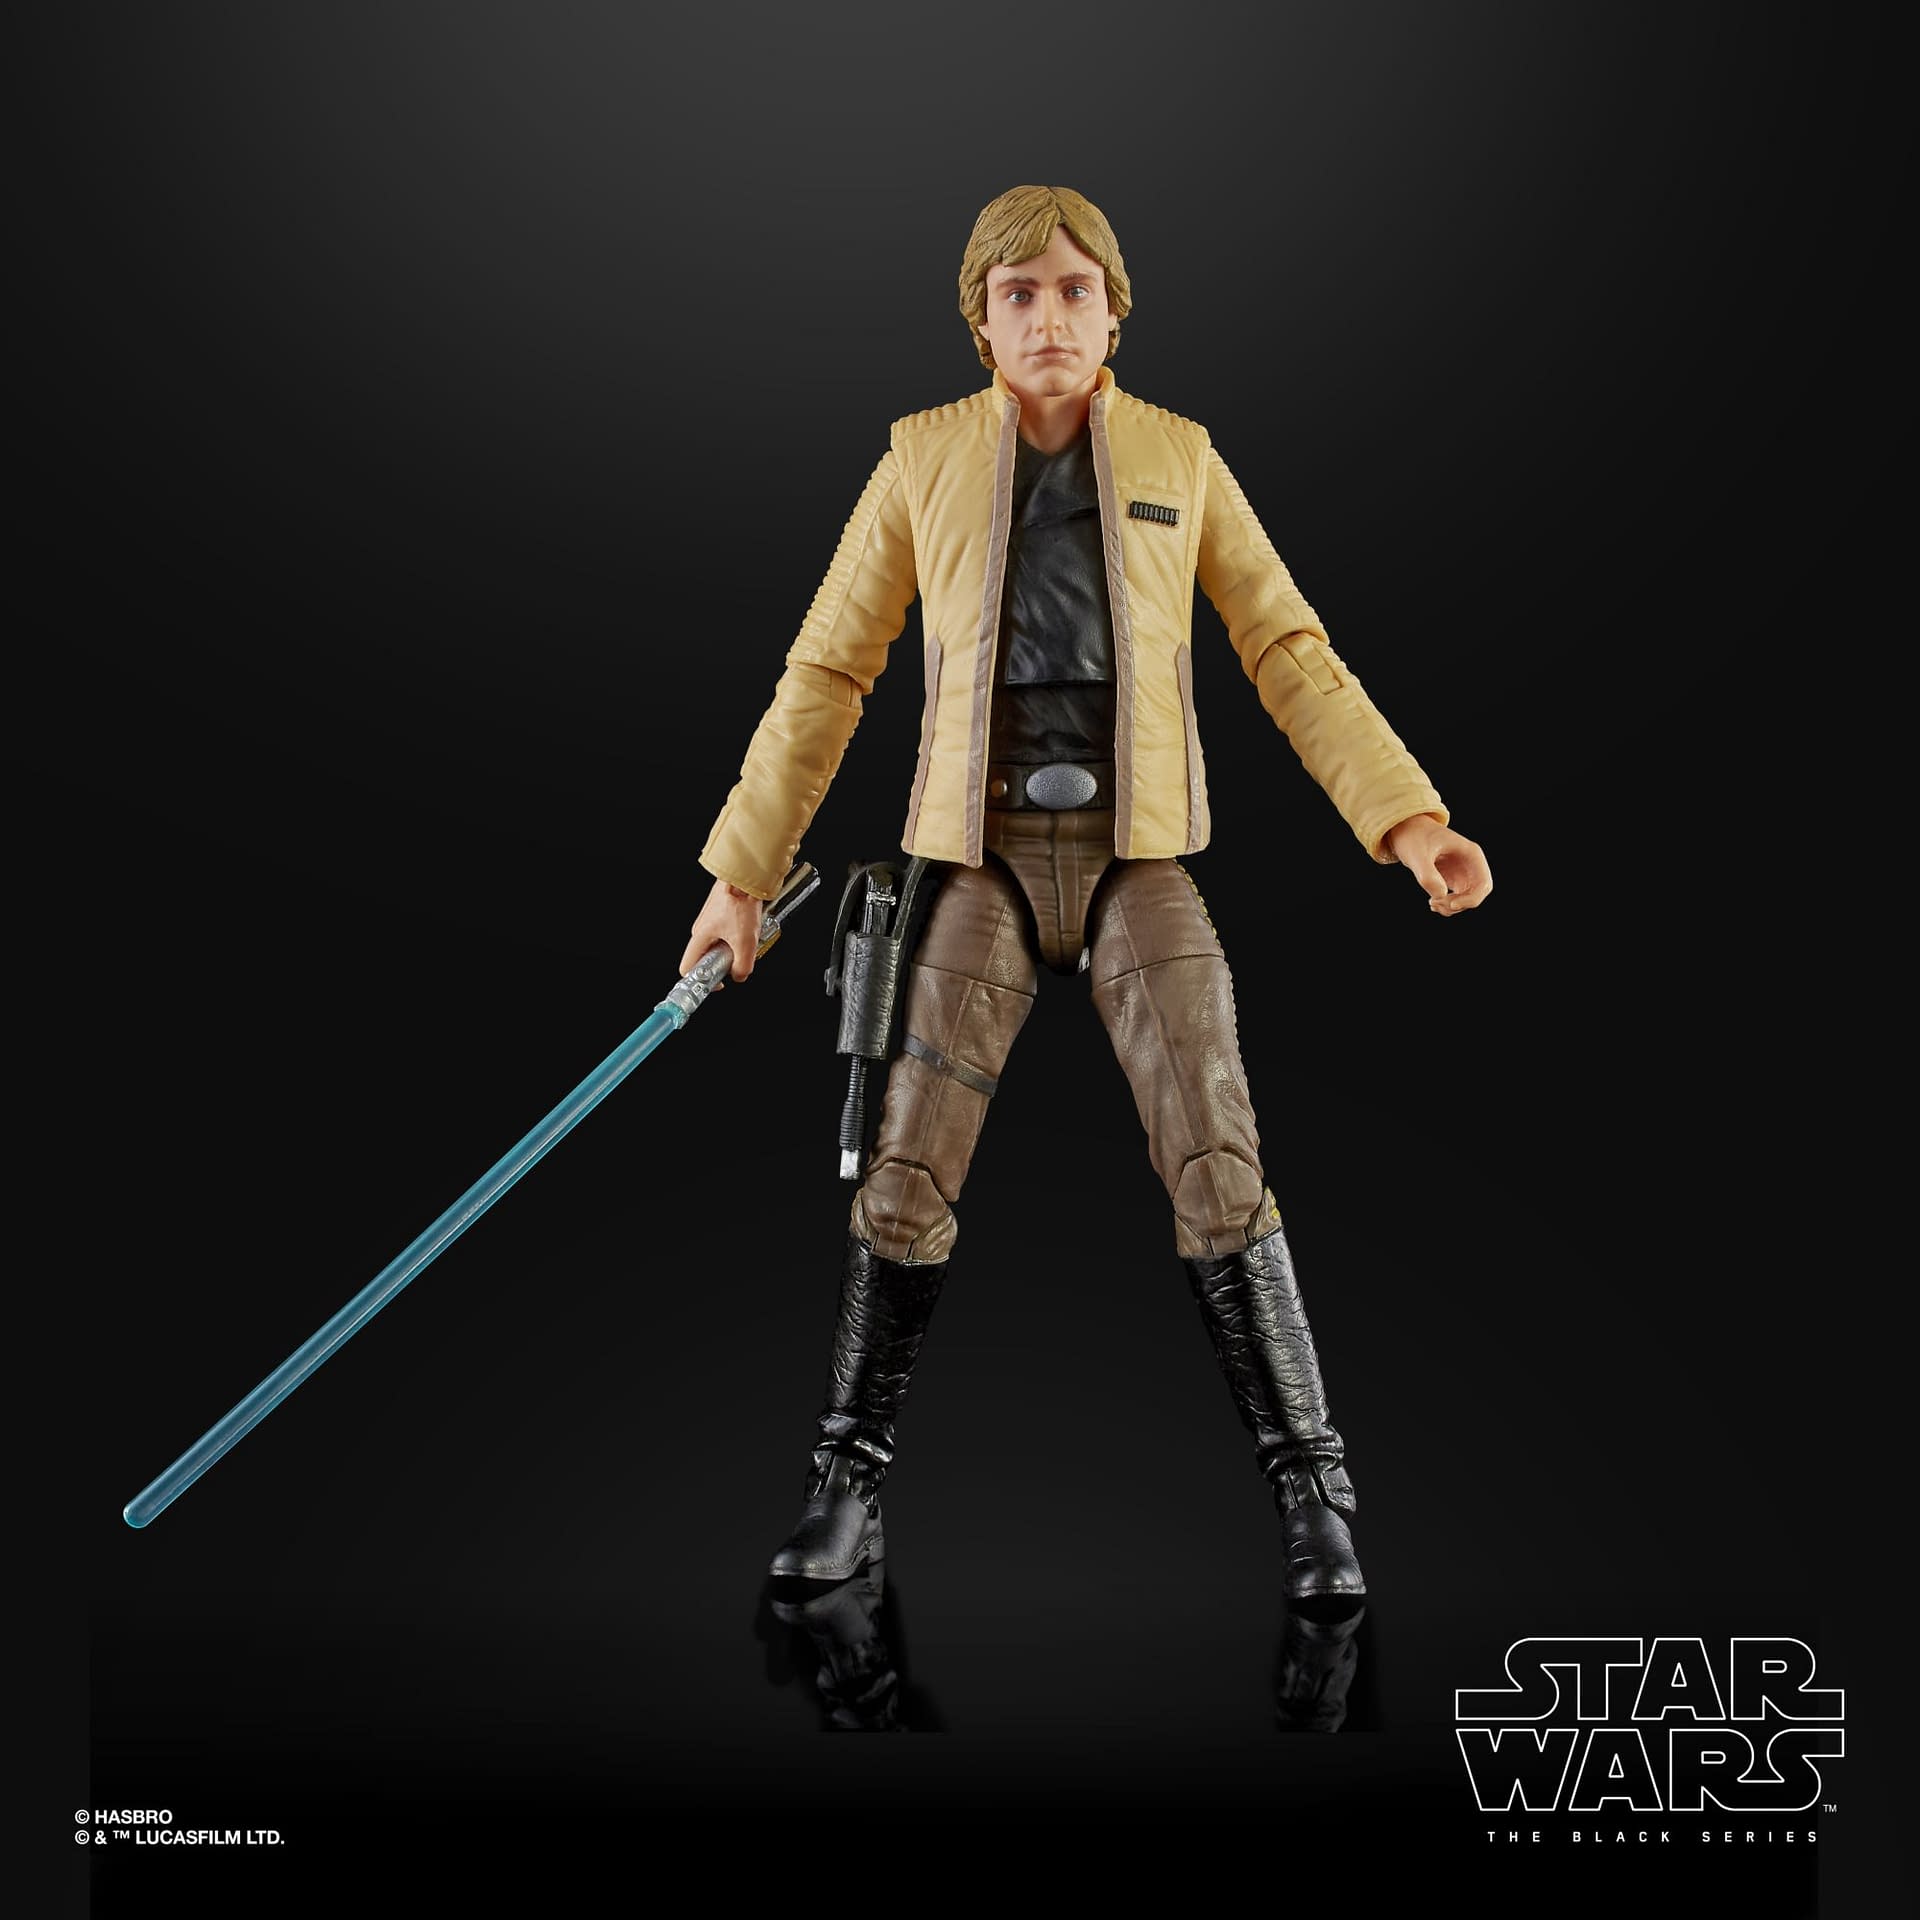 Luke Skywalker Gets a Europe and UK Exclusive Black Series Figure